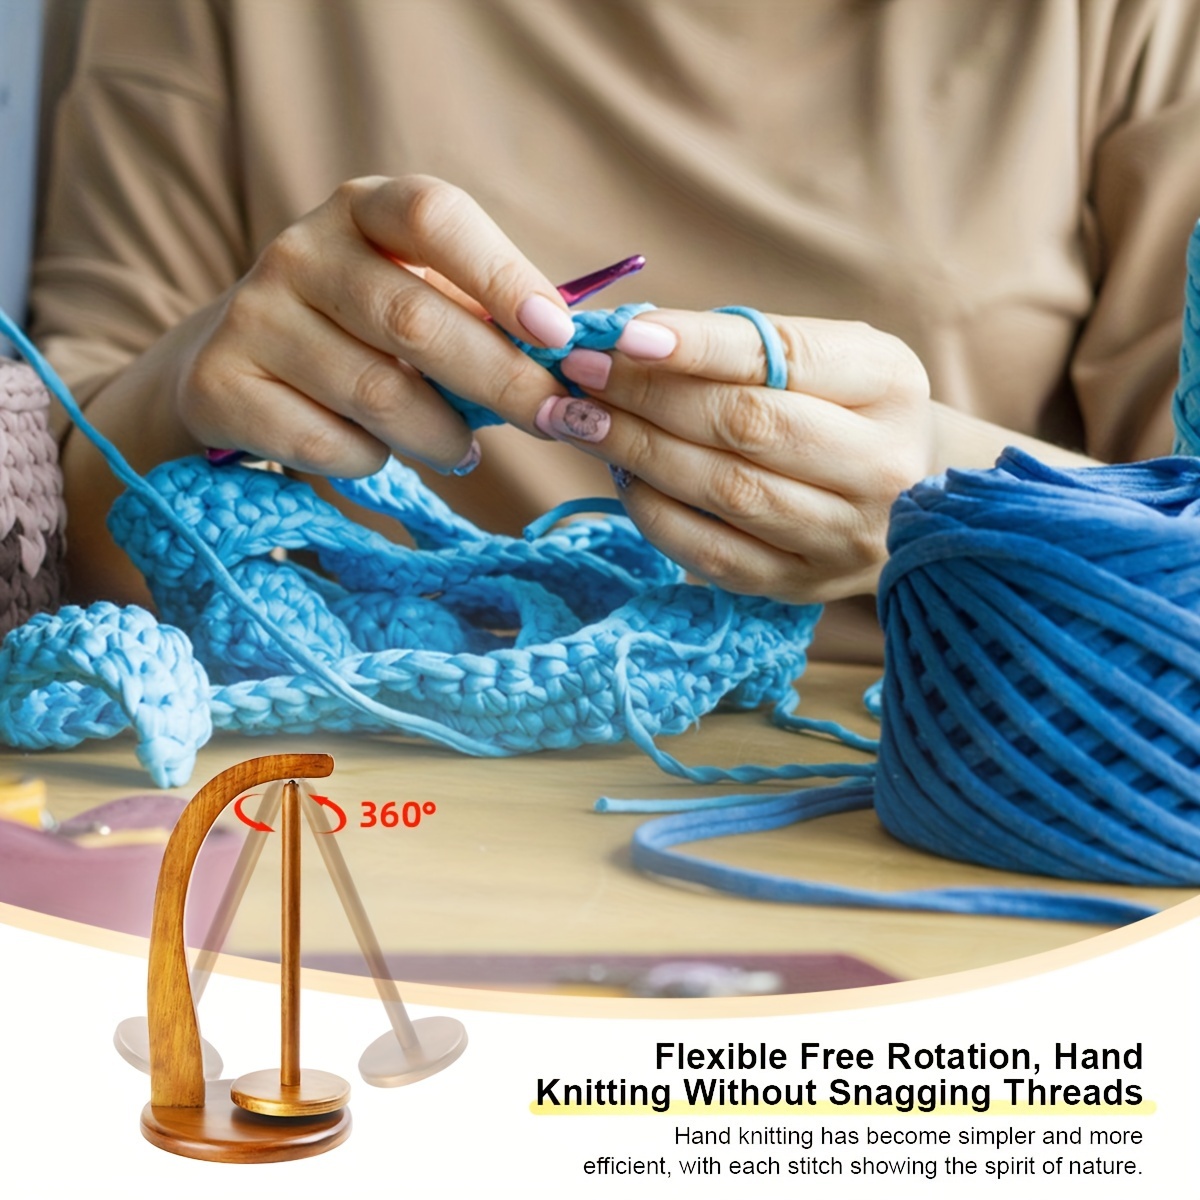 Yarn Holder For Knitting And Crocheting,Crochet Gift For Knitting